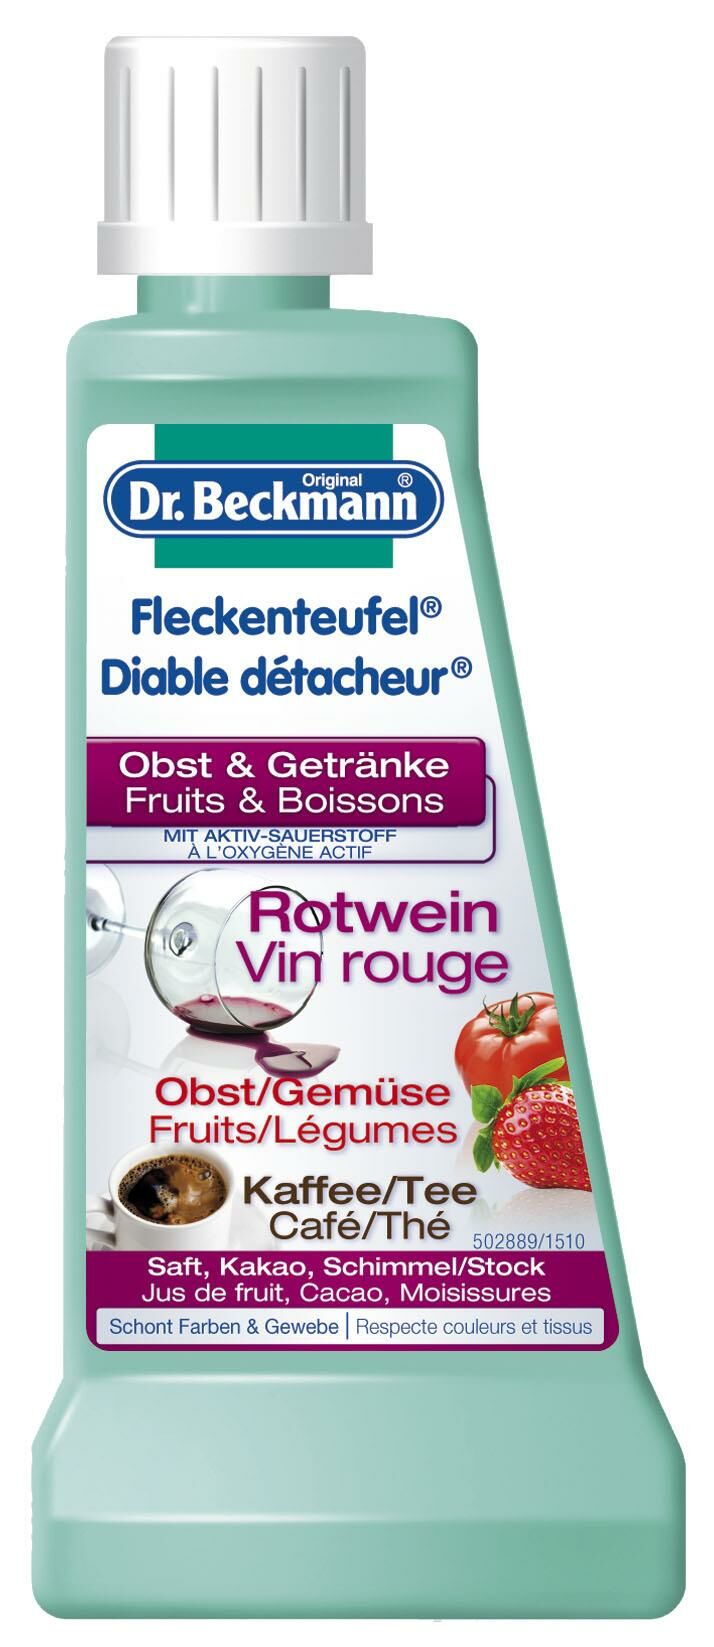 Dr Beckmann diable détacheur fruits&boissons 50 g à petit prix